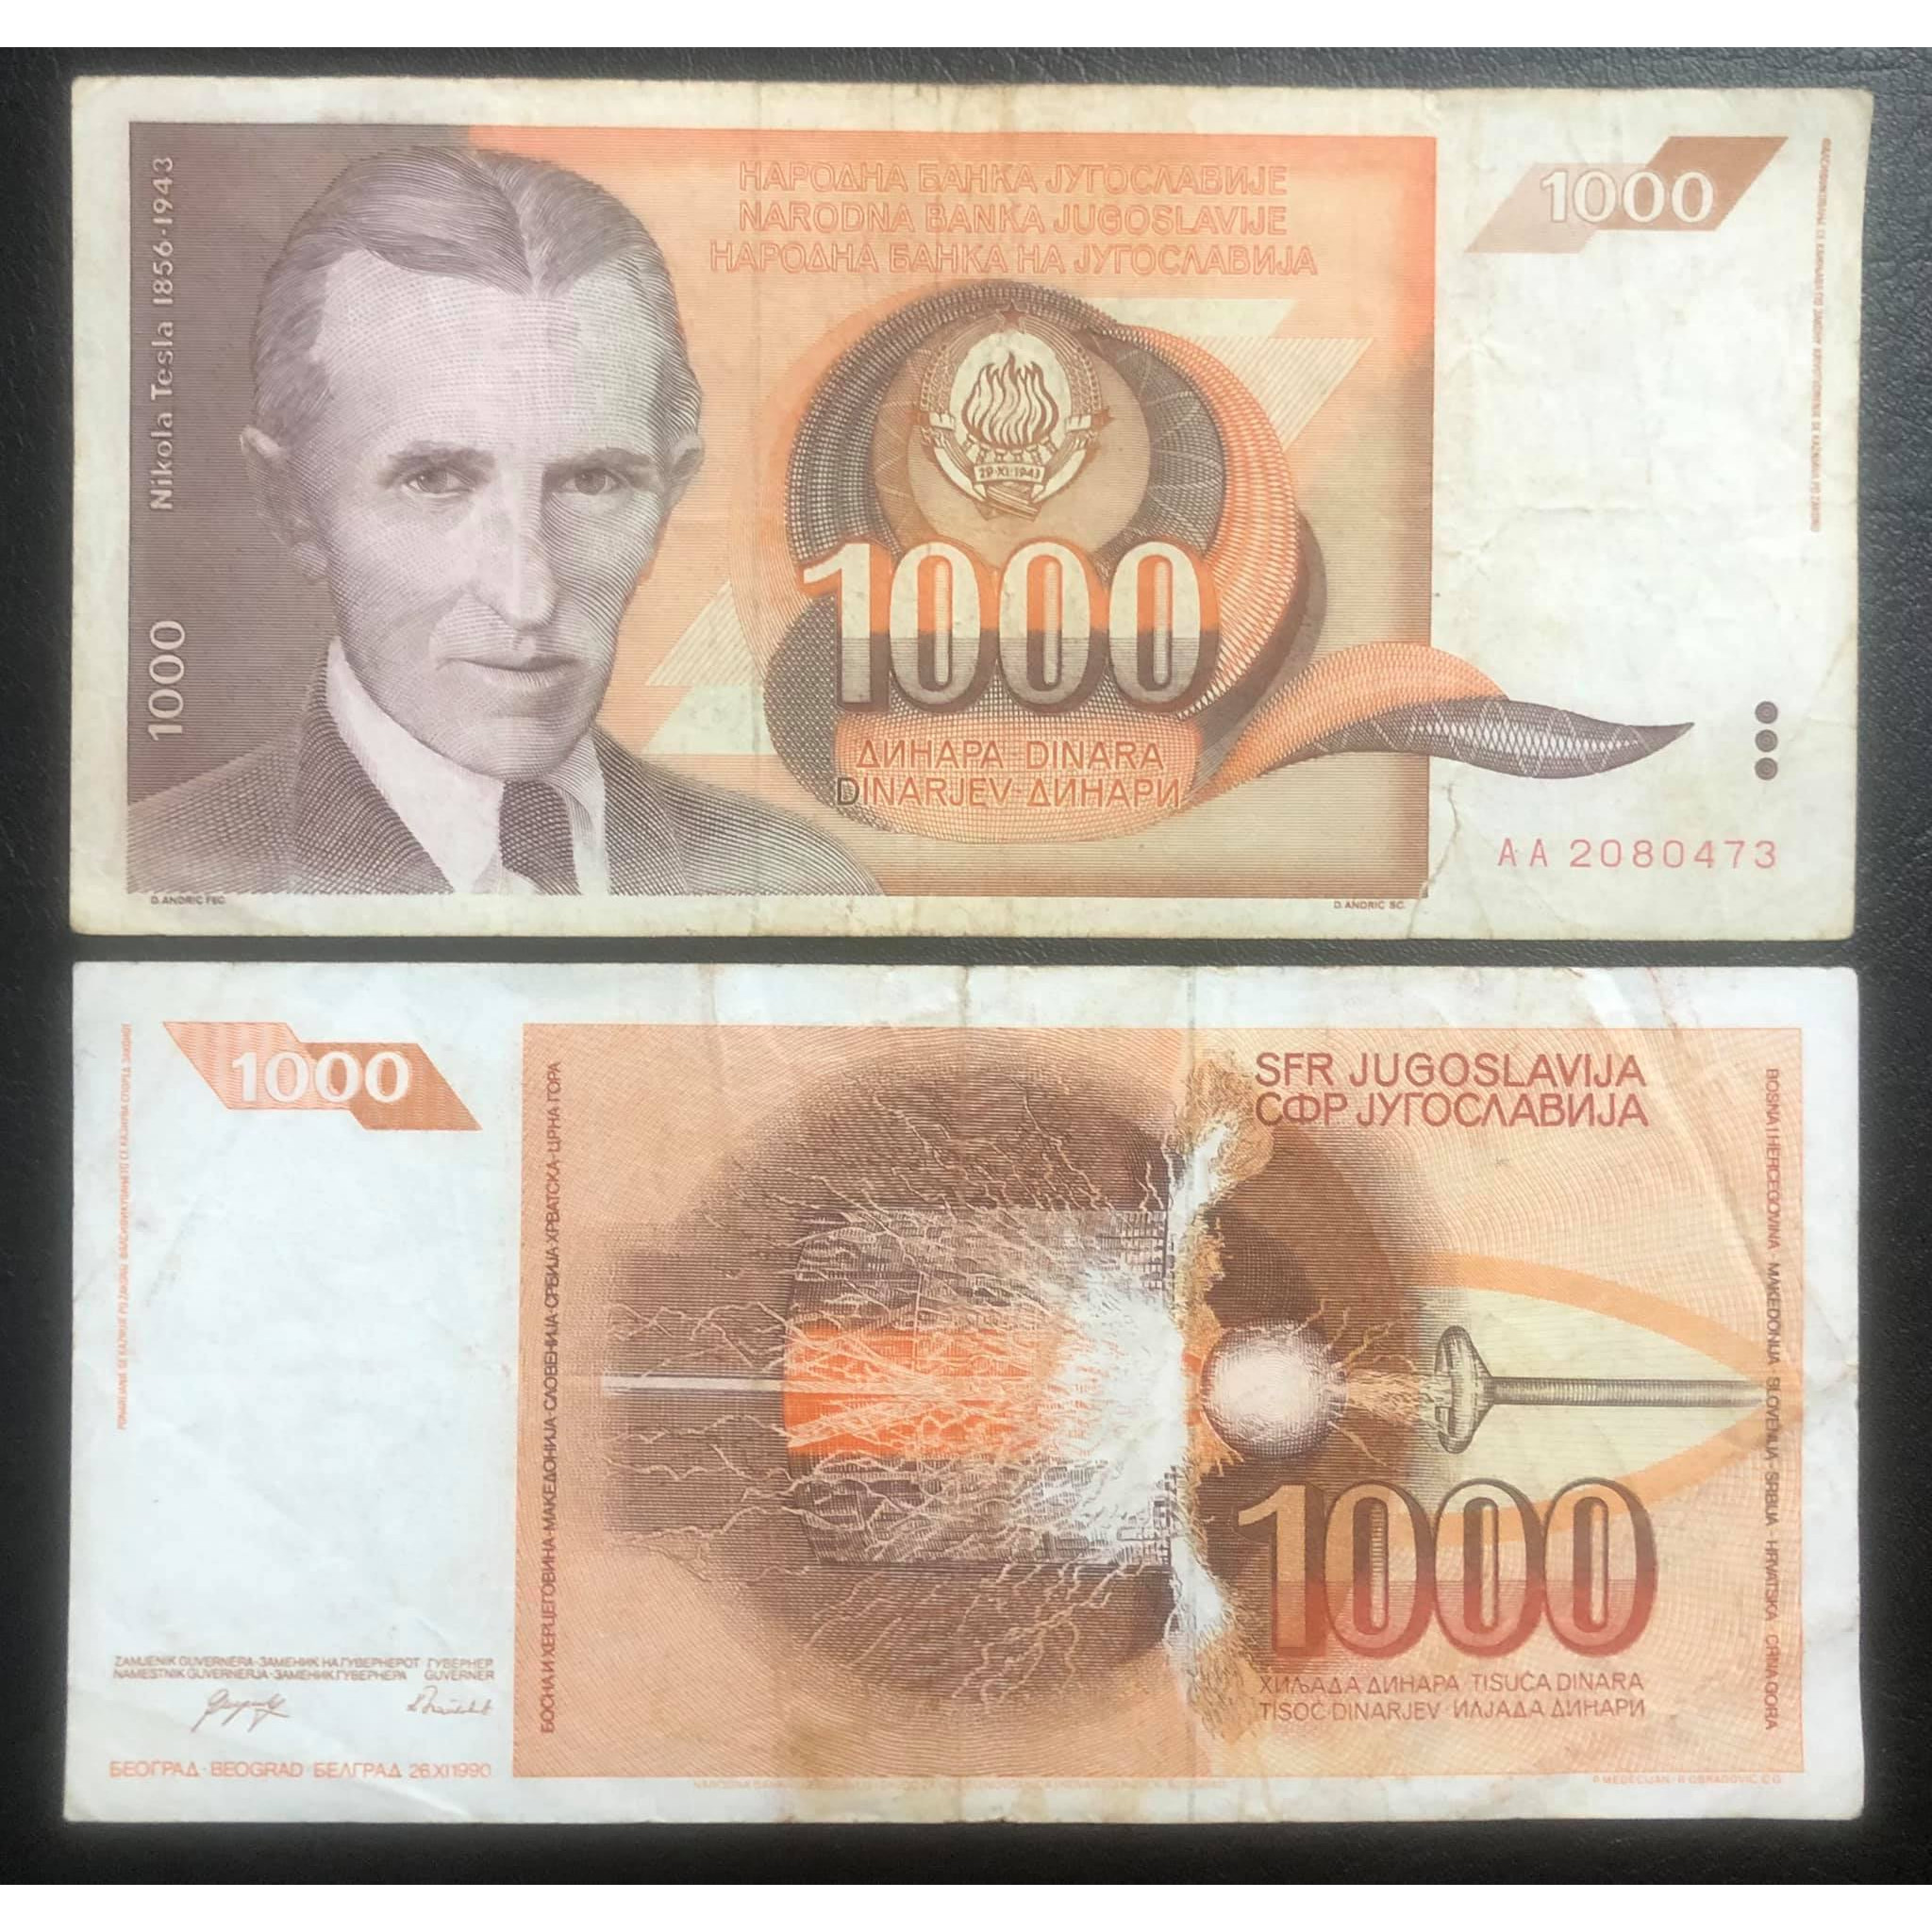 Tiền Nam Tư 1000 dinara, quốc gia không còn tồn tại